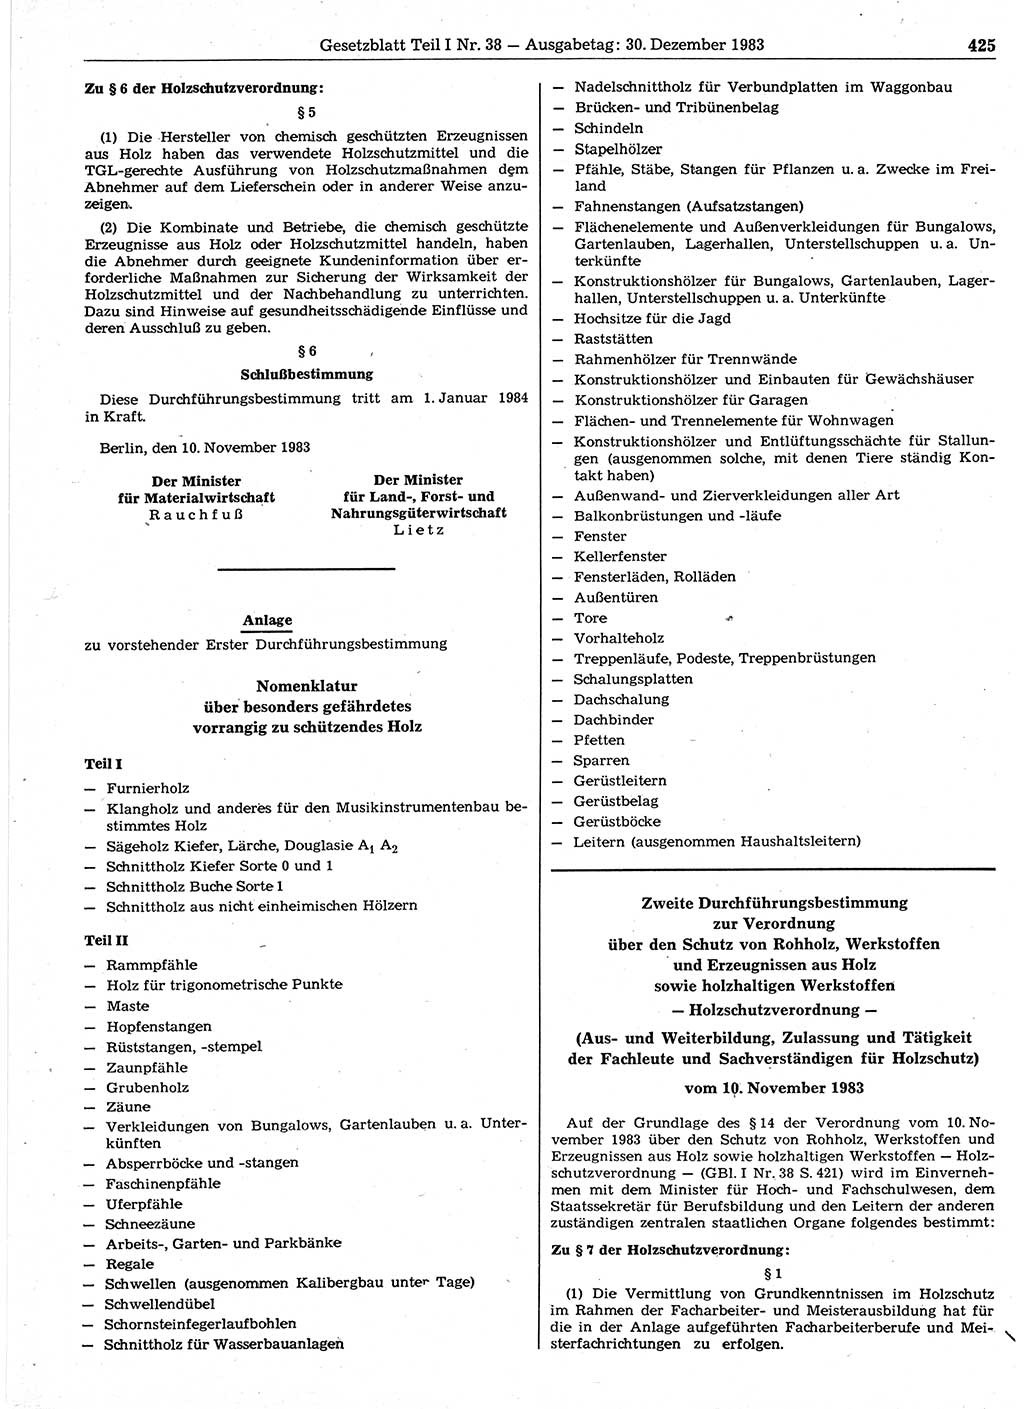 Gesetzblatt (GBl.) der Deutschen Demokratischen Republik (DDR) Teil Ⅰ 1983, Seite 425 (GBl. DDR Ⅰ 1983, S. 425)